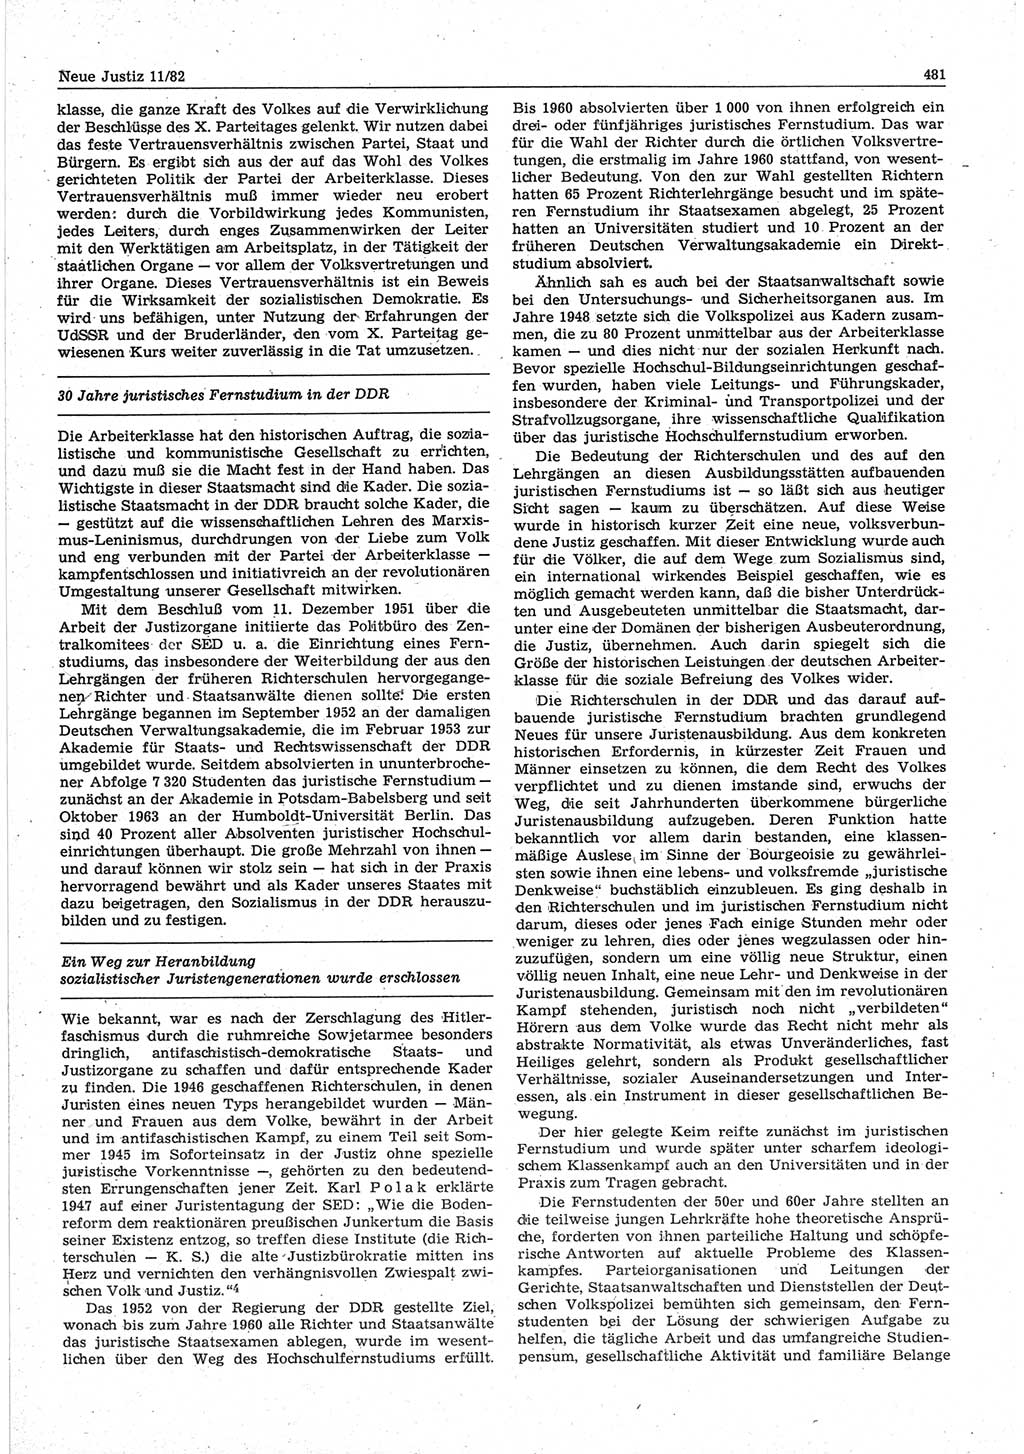 Neue Justiz (NJ), Zeitschrift für sozialistisches Recht und Gesetzlichkeit [Deutsche Demokratische Republik (DDR)], 36. Jahrgang 1982, Seite 481 (NJ DDR 1982, S. 481)